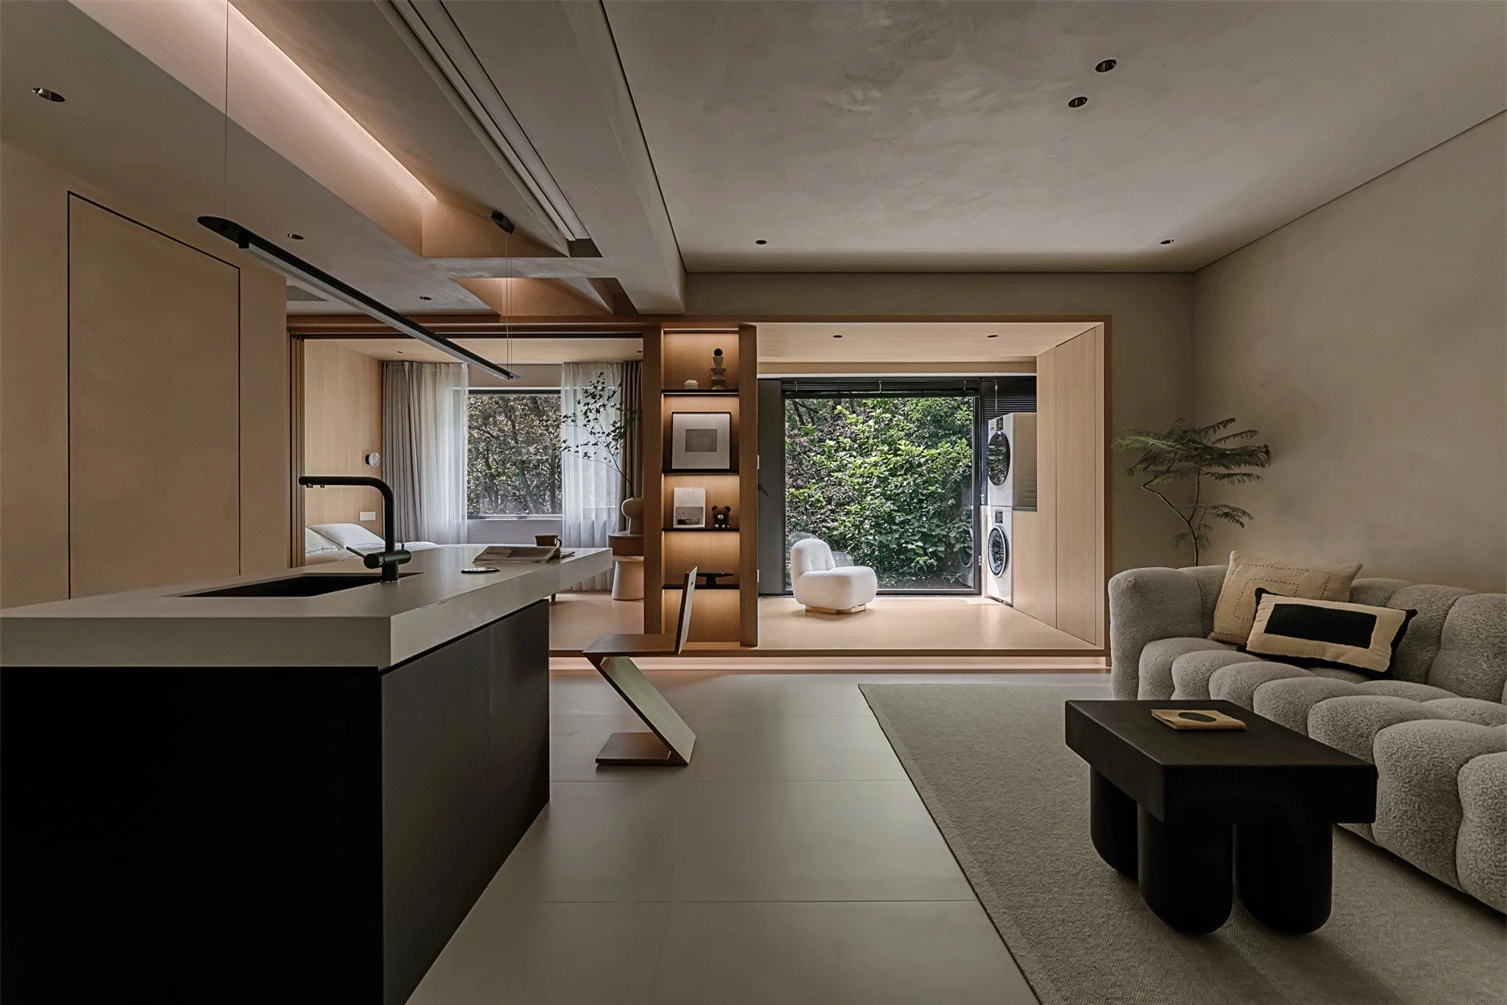 Tiểu thư Thượng Hải đầu tư 12 tỷ để sở hữu căn nhà đẹp nghệ như studio: Tan làm chỉ muốn về nhà- Ảnh 1.